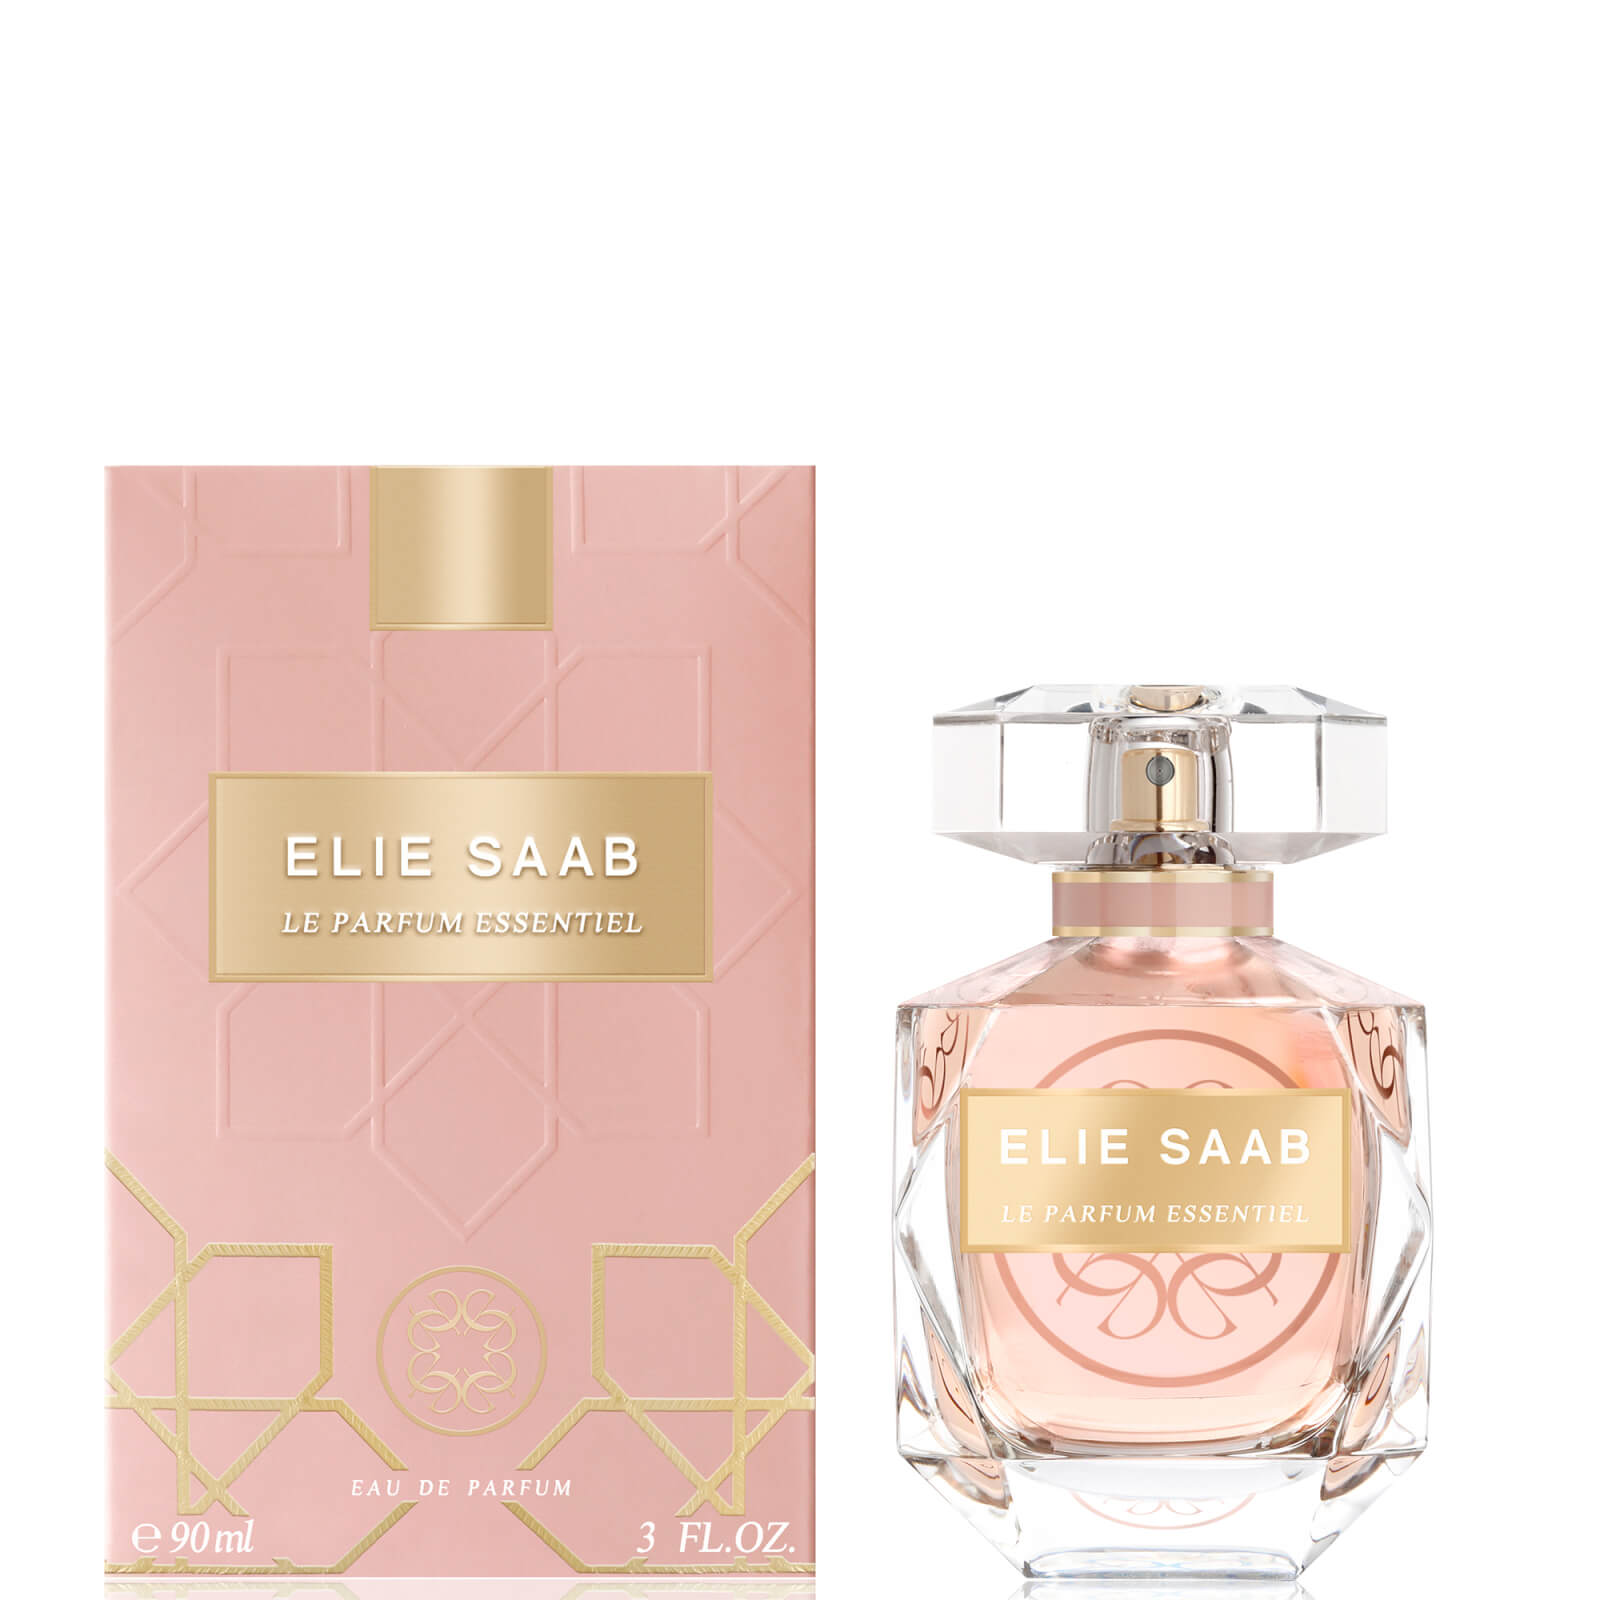 Image of Elie Saab Le Parfum Essentiel Eau de Parfum 90ml